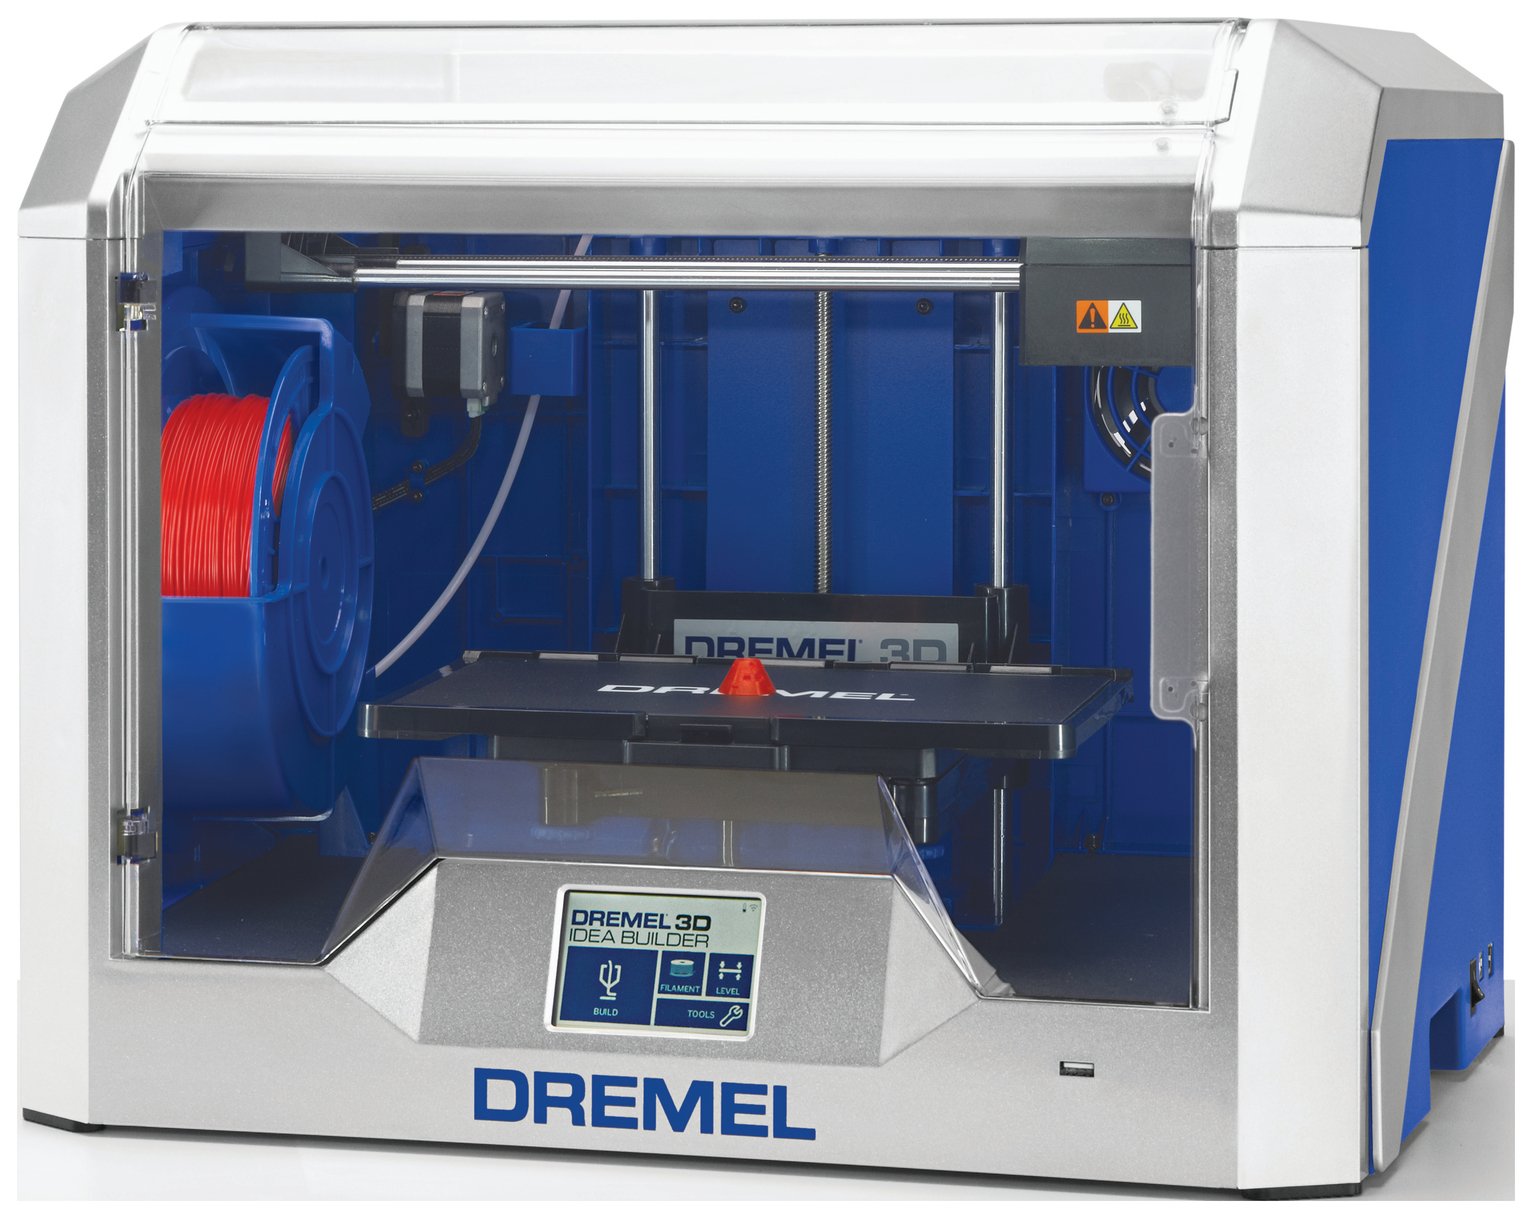 dremel-3d40-idea-builder-3d-printer-review-review-electronics